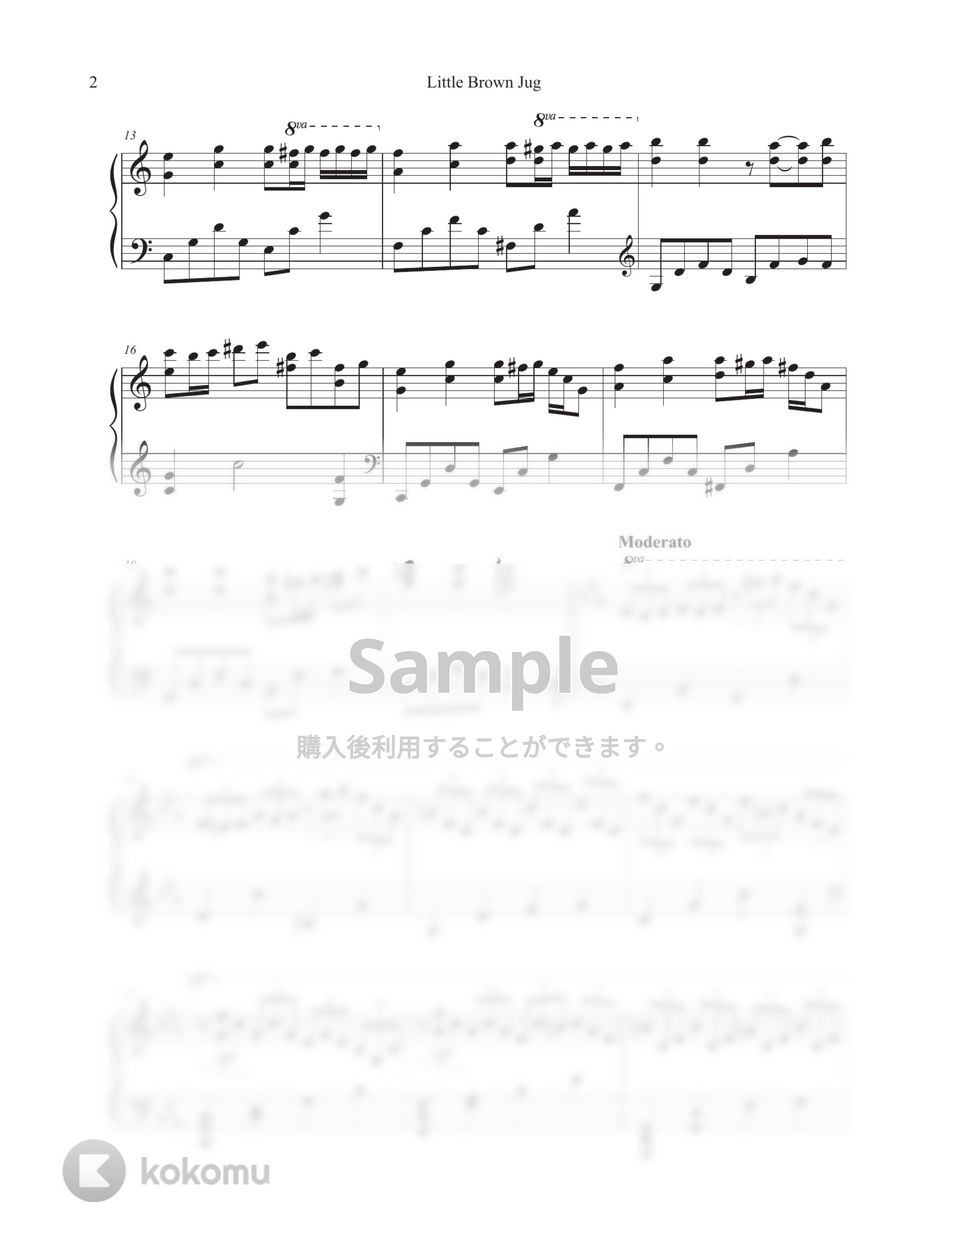 ピアノの森 ost. - Little Brown Jug (5 変奏曲) by Tully Piano